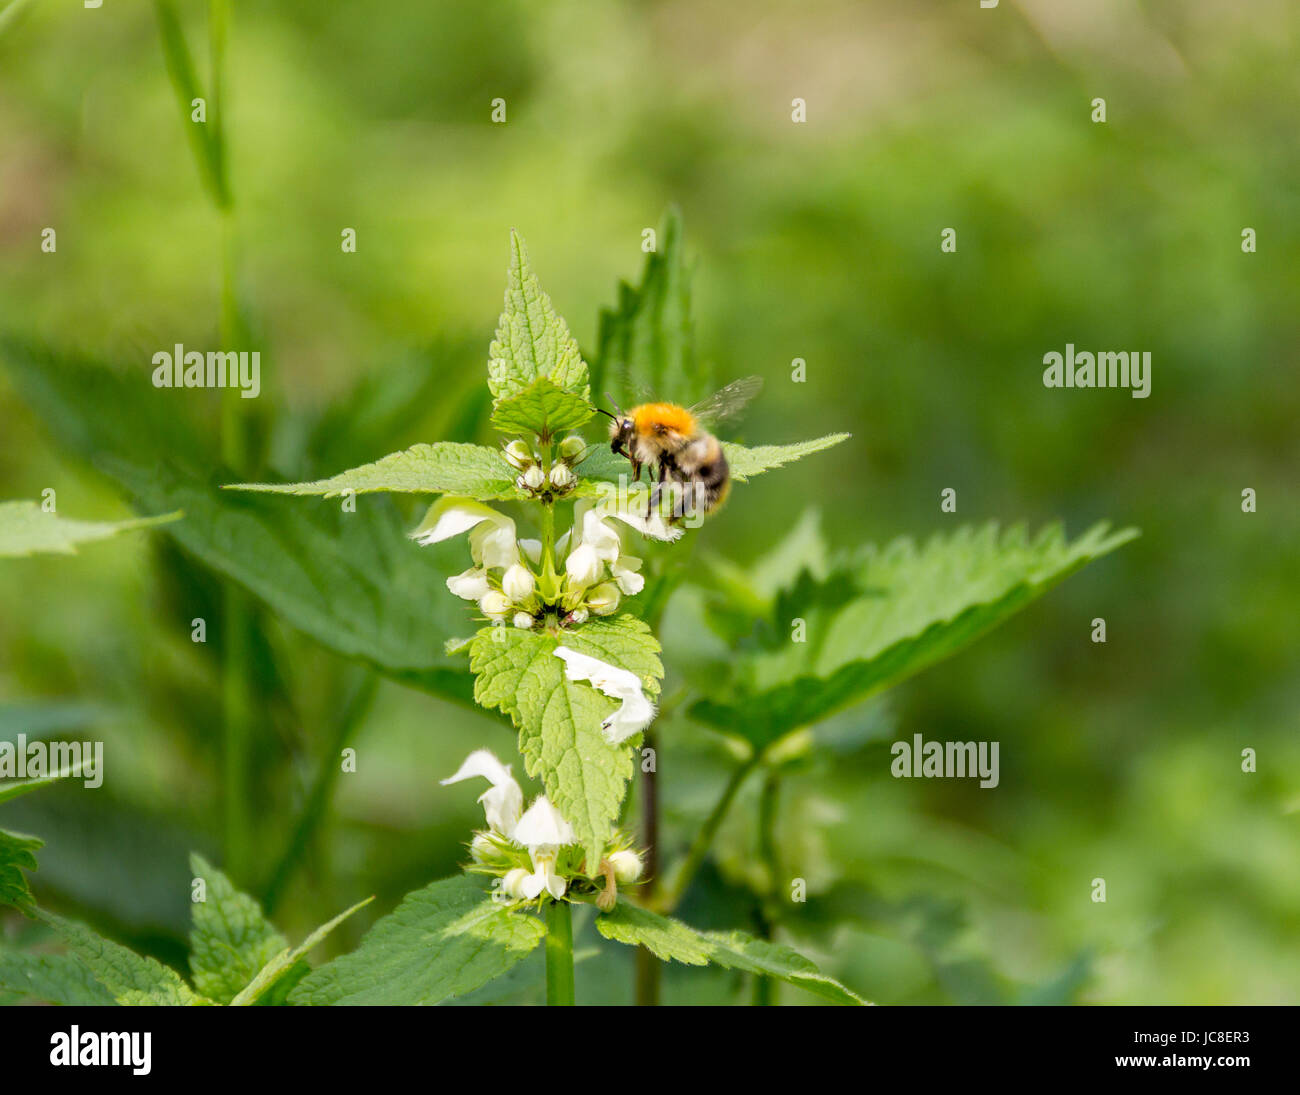 honeybee on dead-nettle flower in sunny ambiance Stock Photo